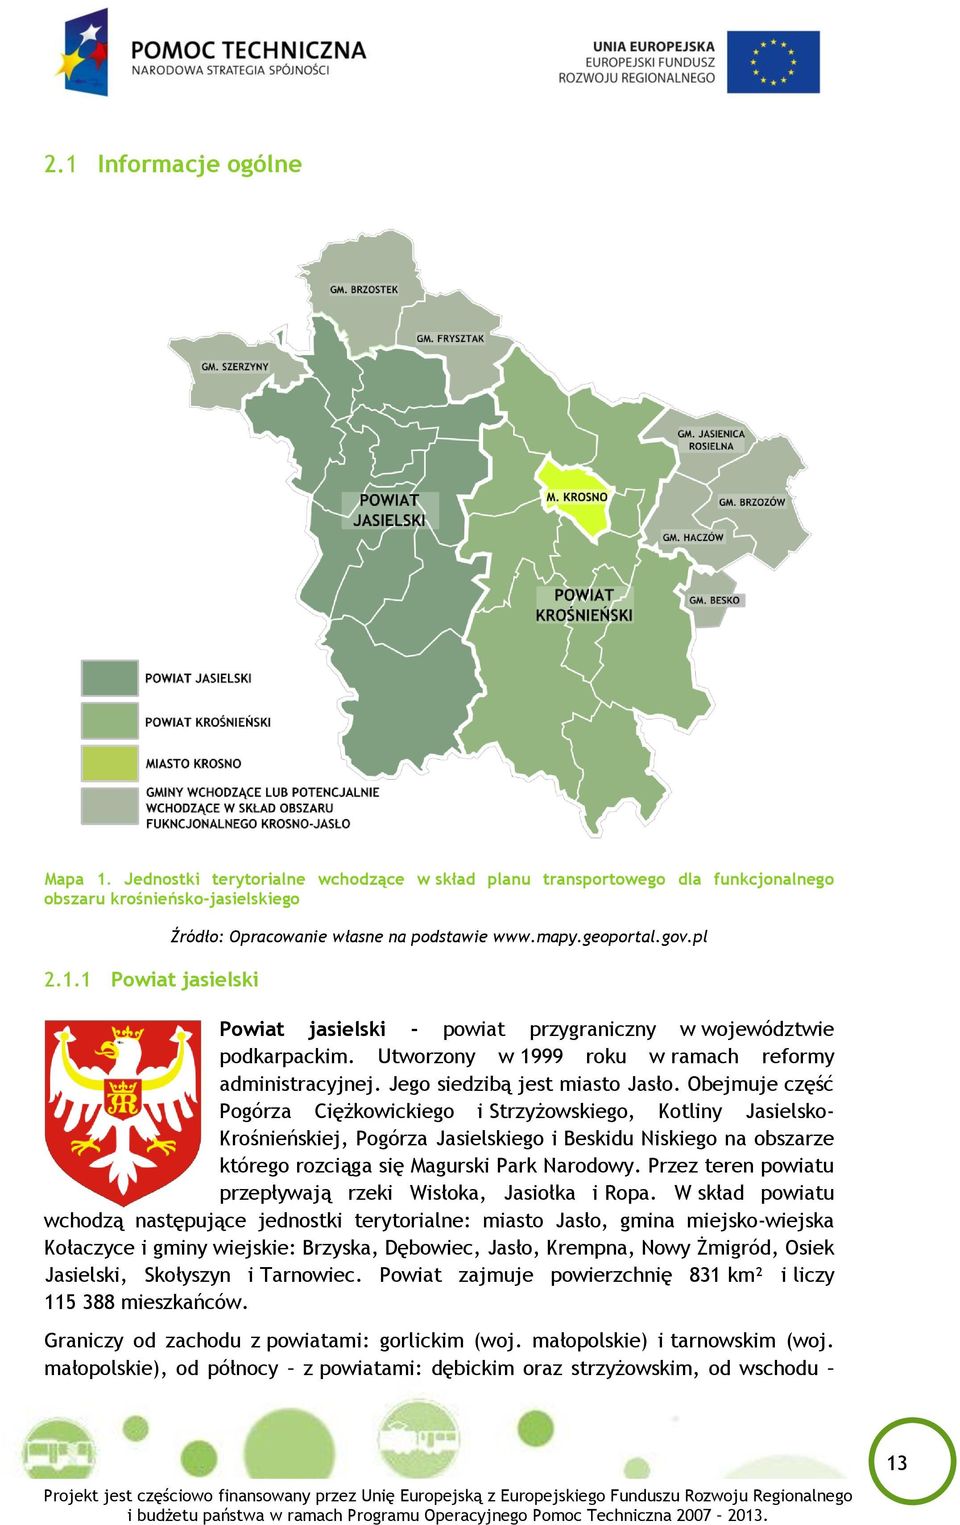 Obejmuje część Pogórza Ciężkowickiego i Strzyżowskiego, Kotliny Jasielsko- Krośnieńskiej, Pogórza Jasielskiego i Beskidu Niskiego na obszarze którego rozciąga się Magurski Park Narodowy.